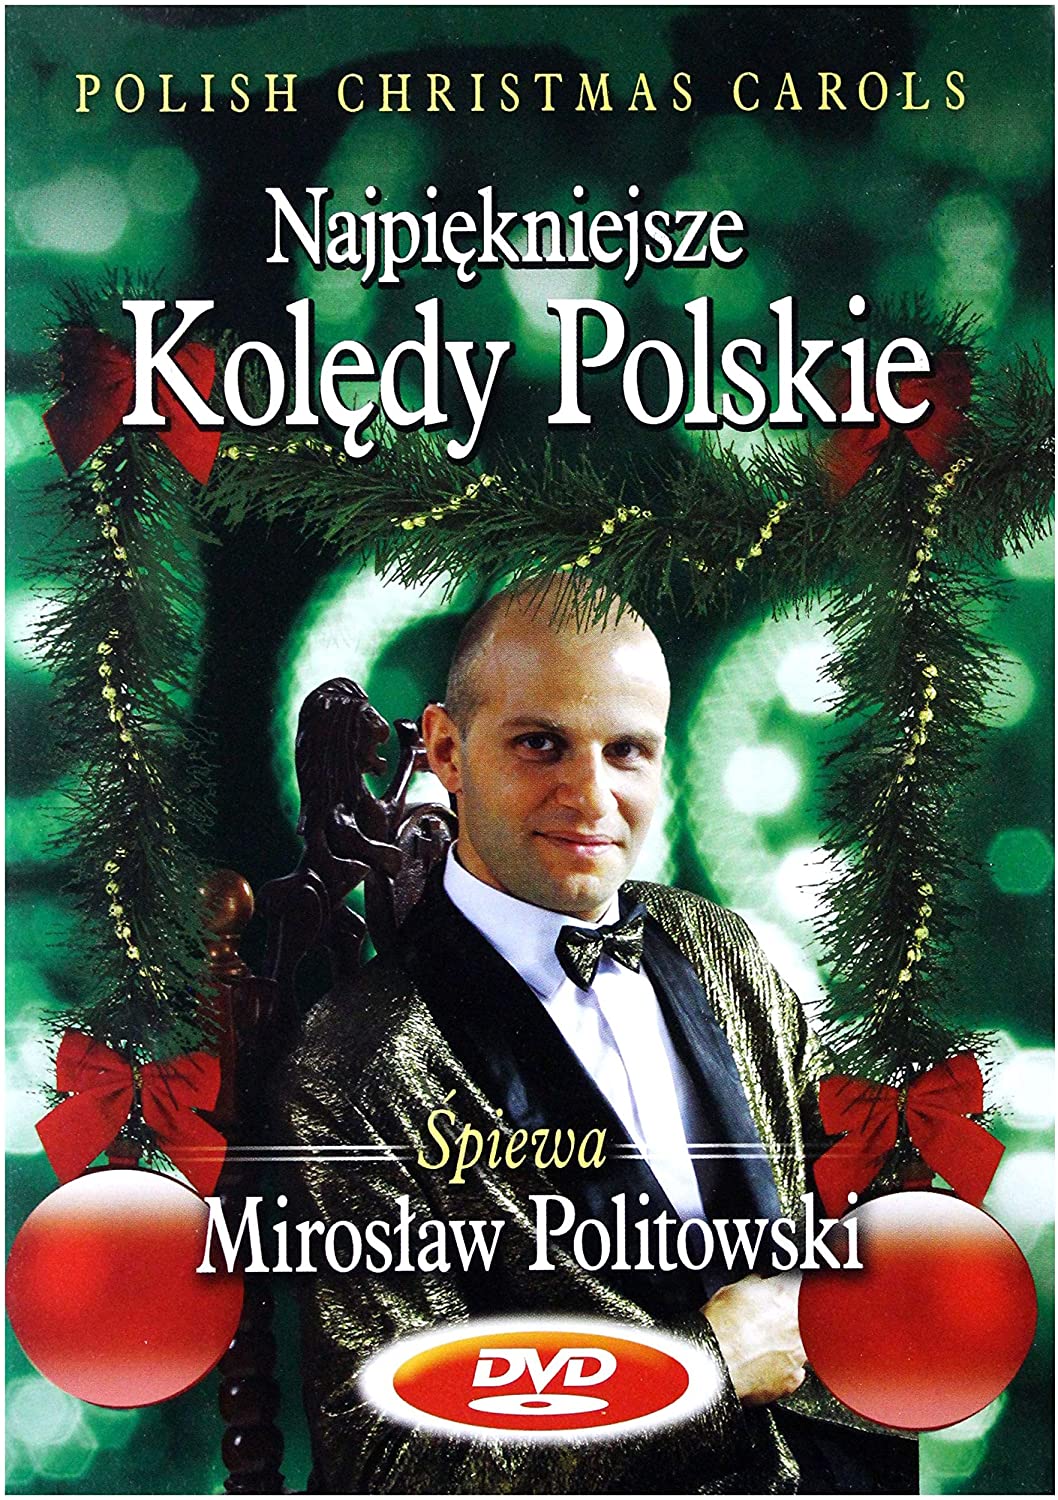 POLITOWSKI MIROSŁAW - Najpiękniejsze Kolędy Polskie